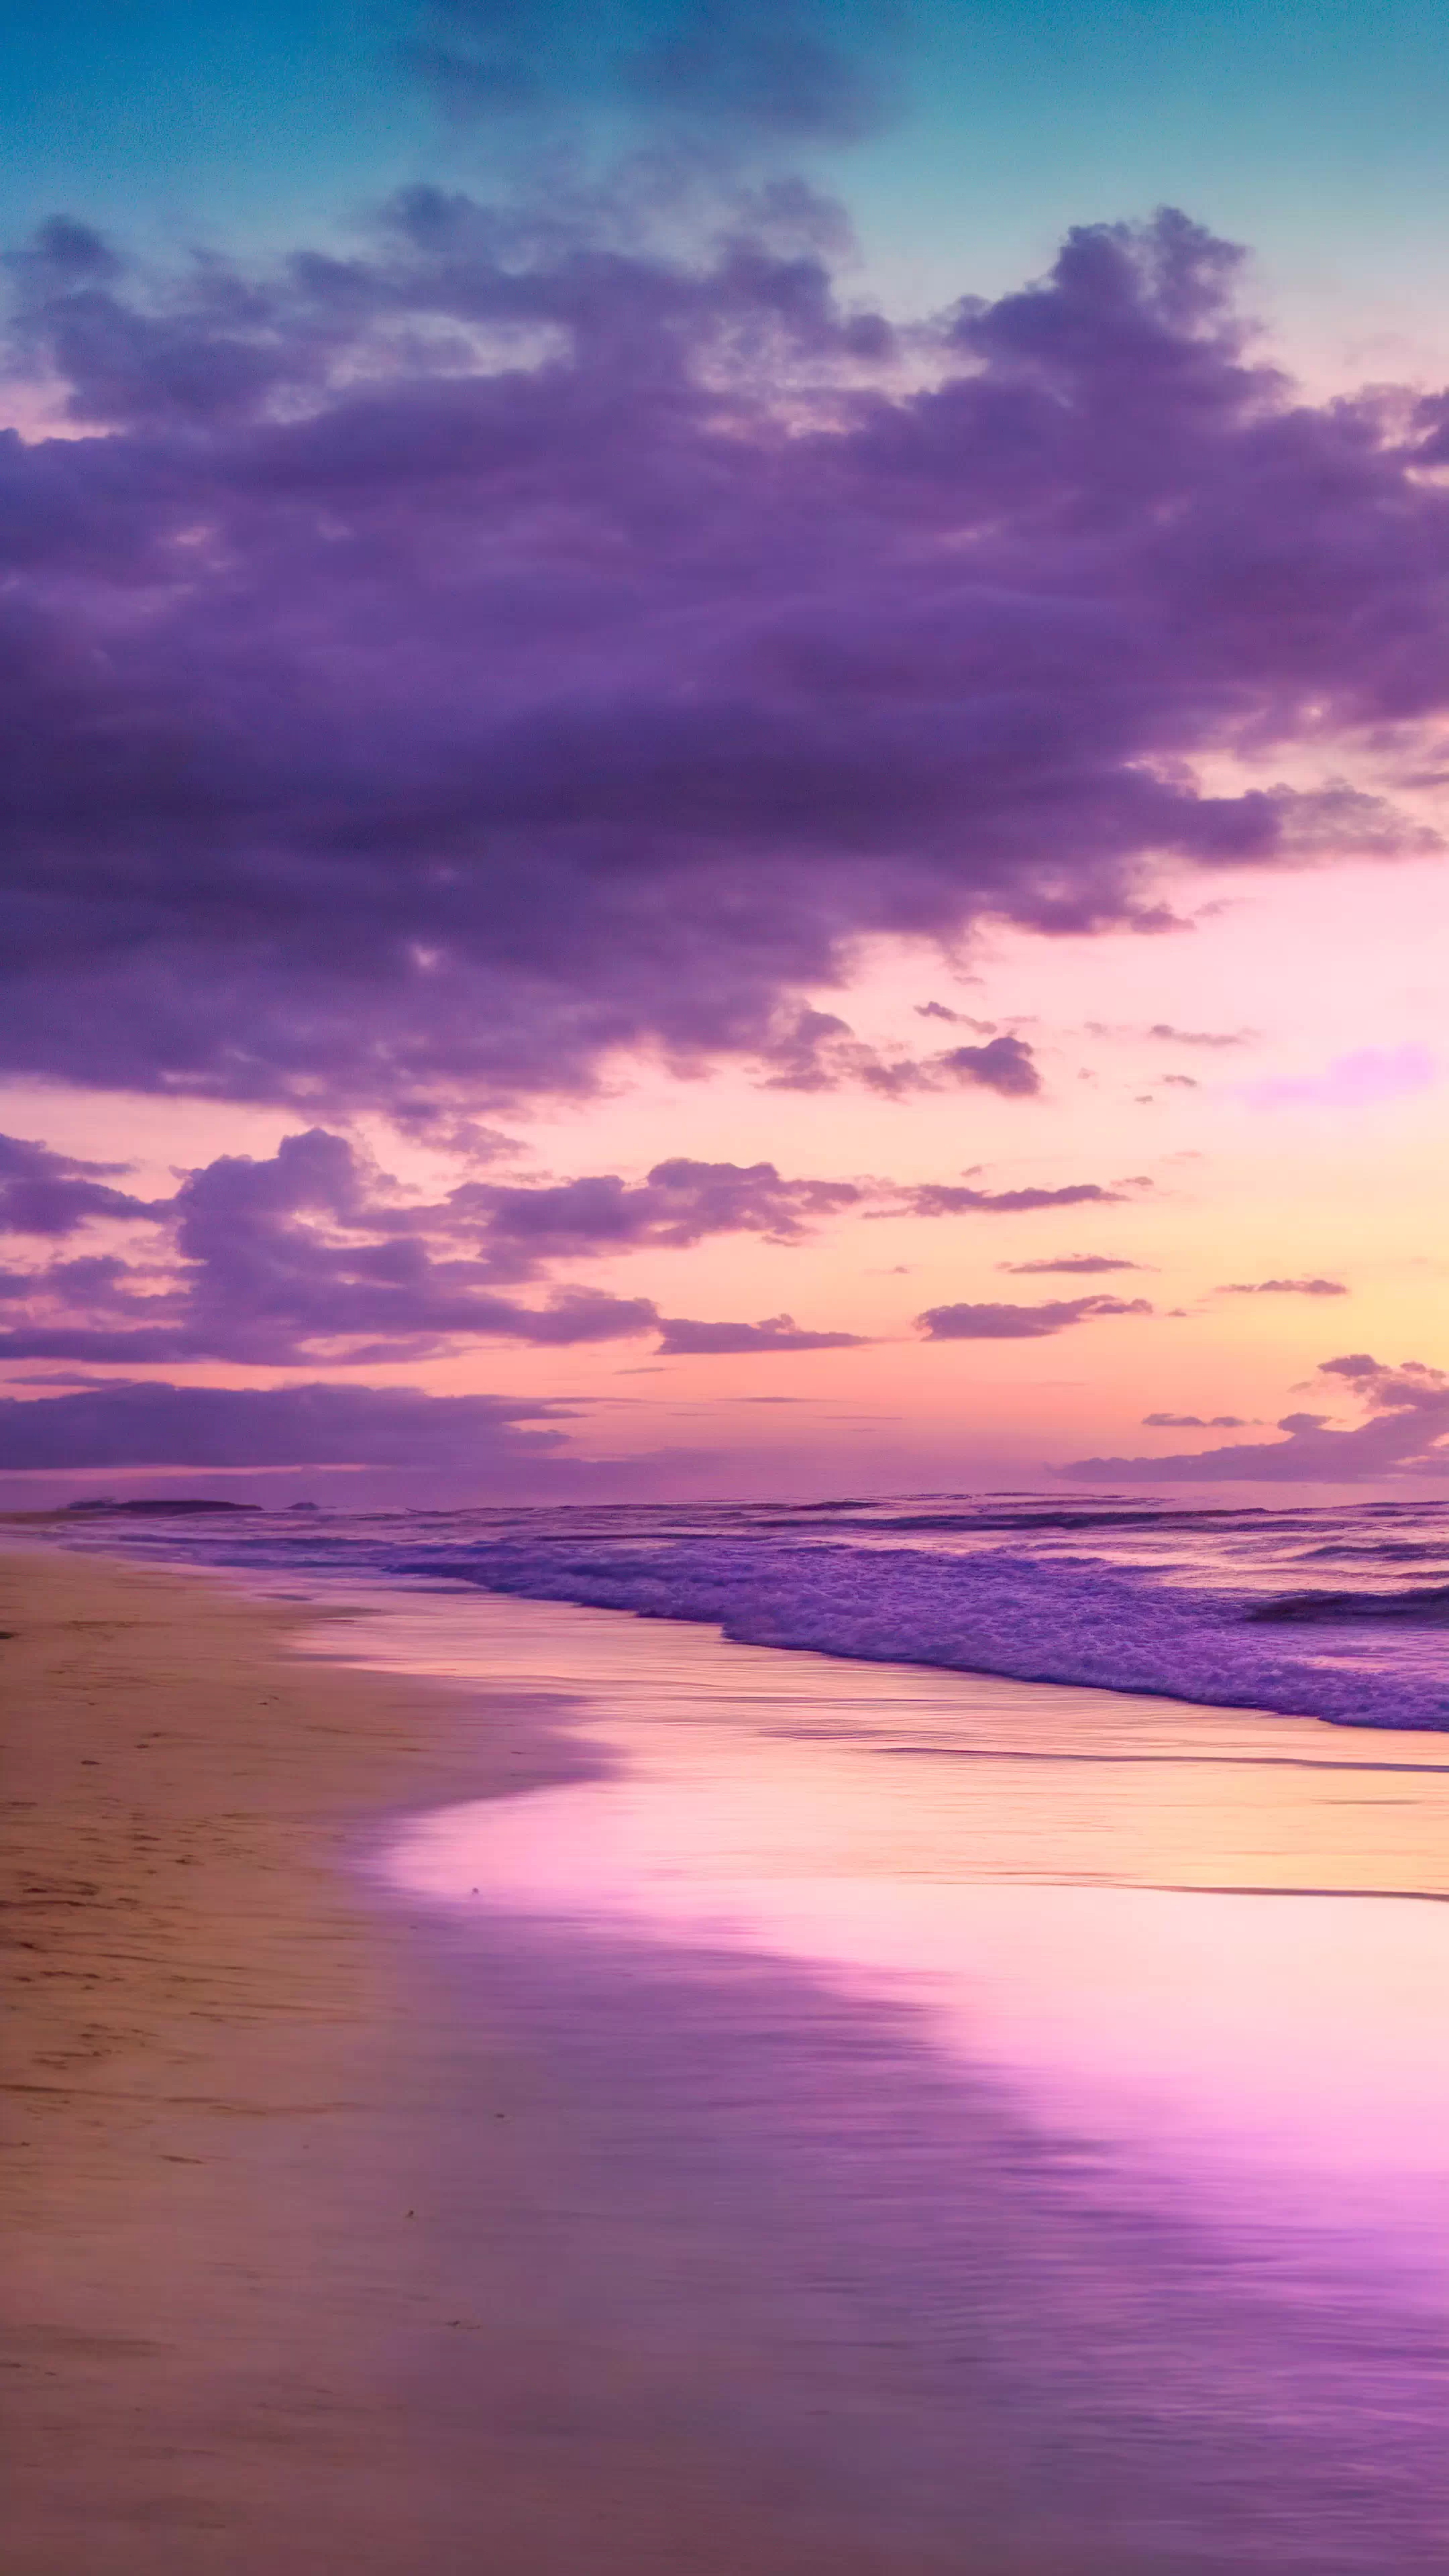 Téléchargez ce fond d'écran de nature en HD pour votre iPhone, capturant une plage tranquille au crépuscule avec un ciel peint en nuances de violet et de rose, et laissez votre écran devenir une fenêtre sur un coucher de soleil côtier serein.